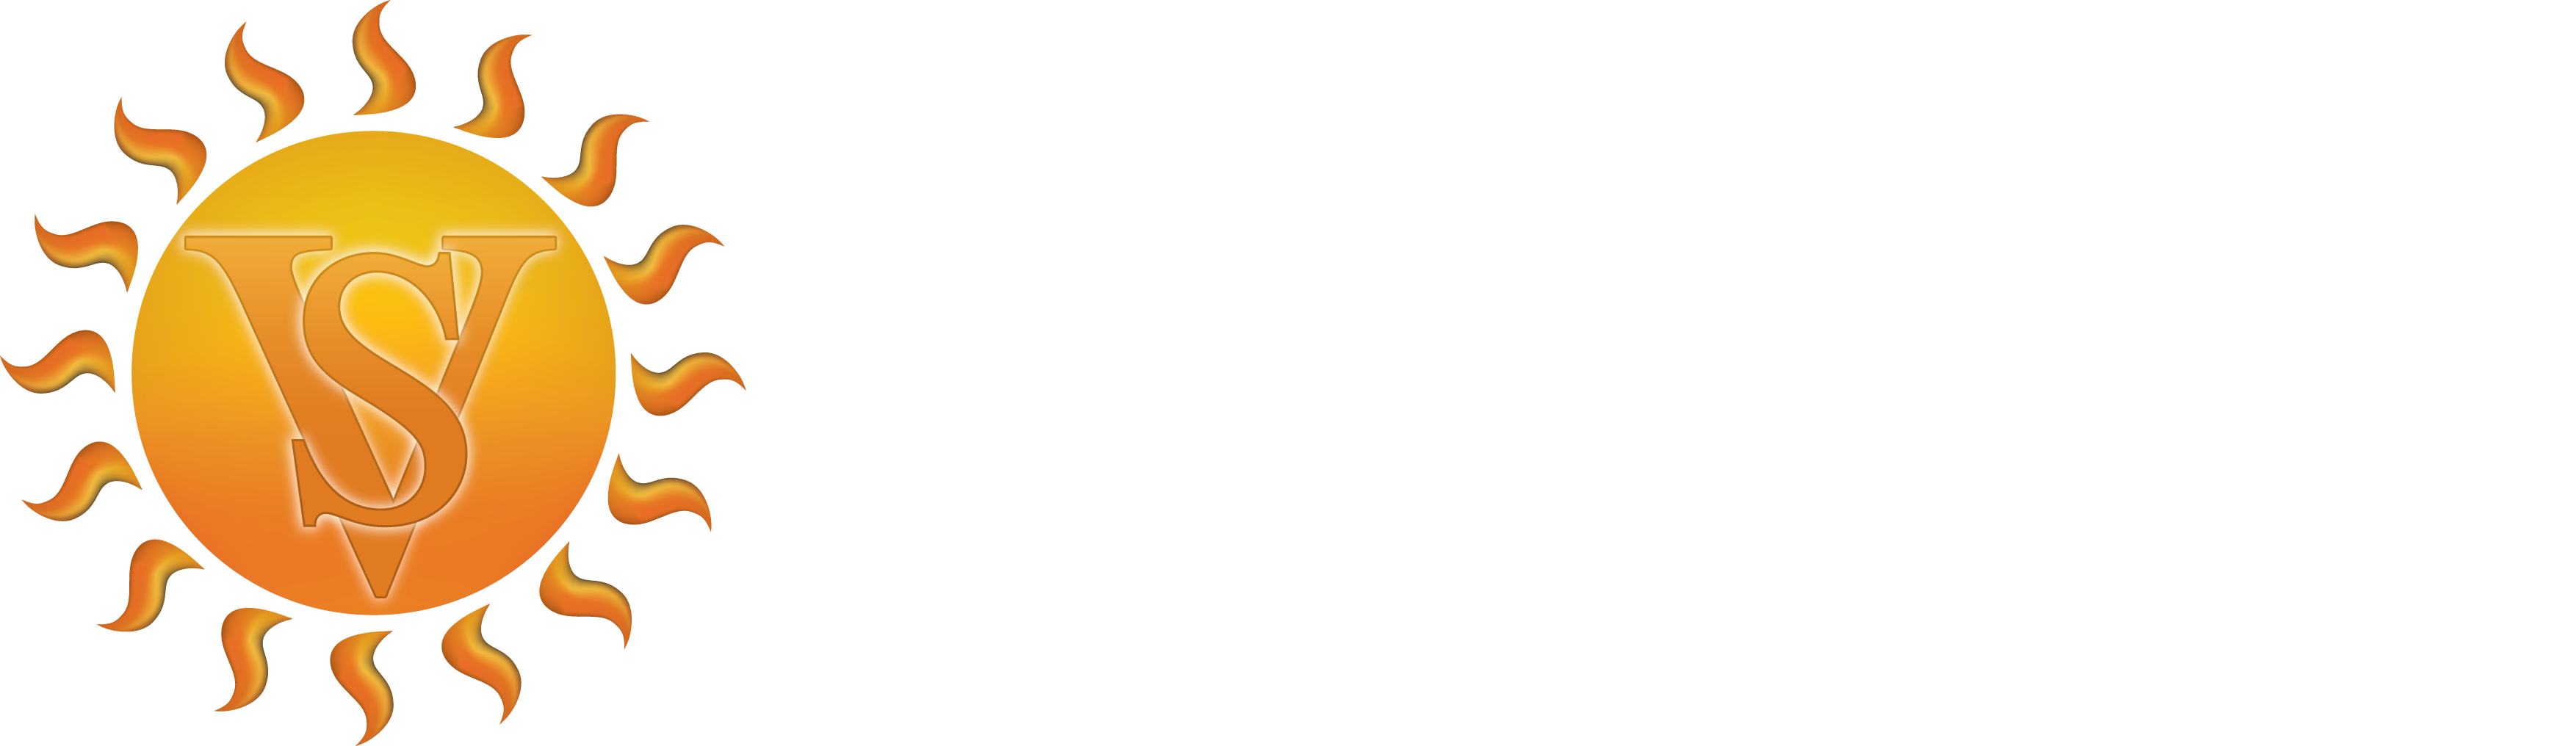 Villa Sassa Hotel, Residences & Spa